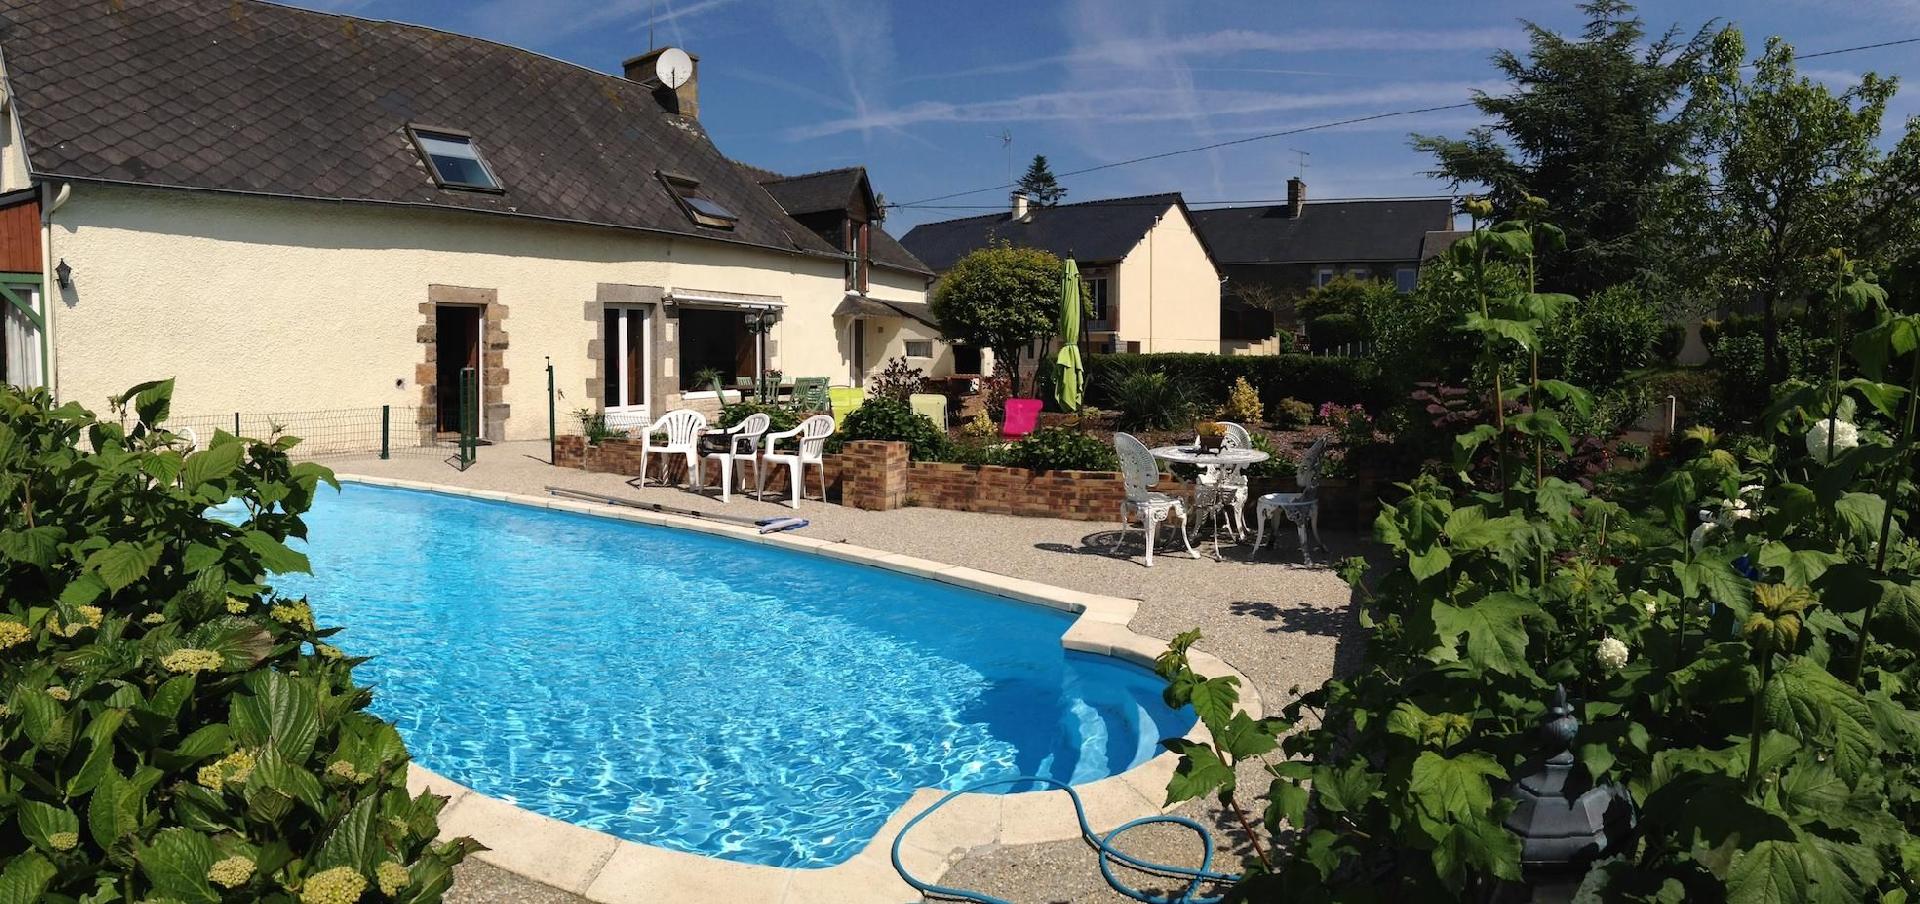 Ferienhaus mit Garten und eigenem Pool, in der N&a Ferienhaus  Côte d'Azur